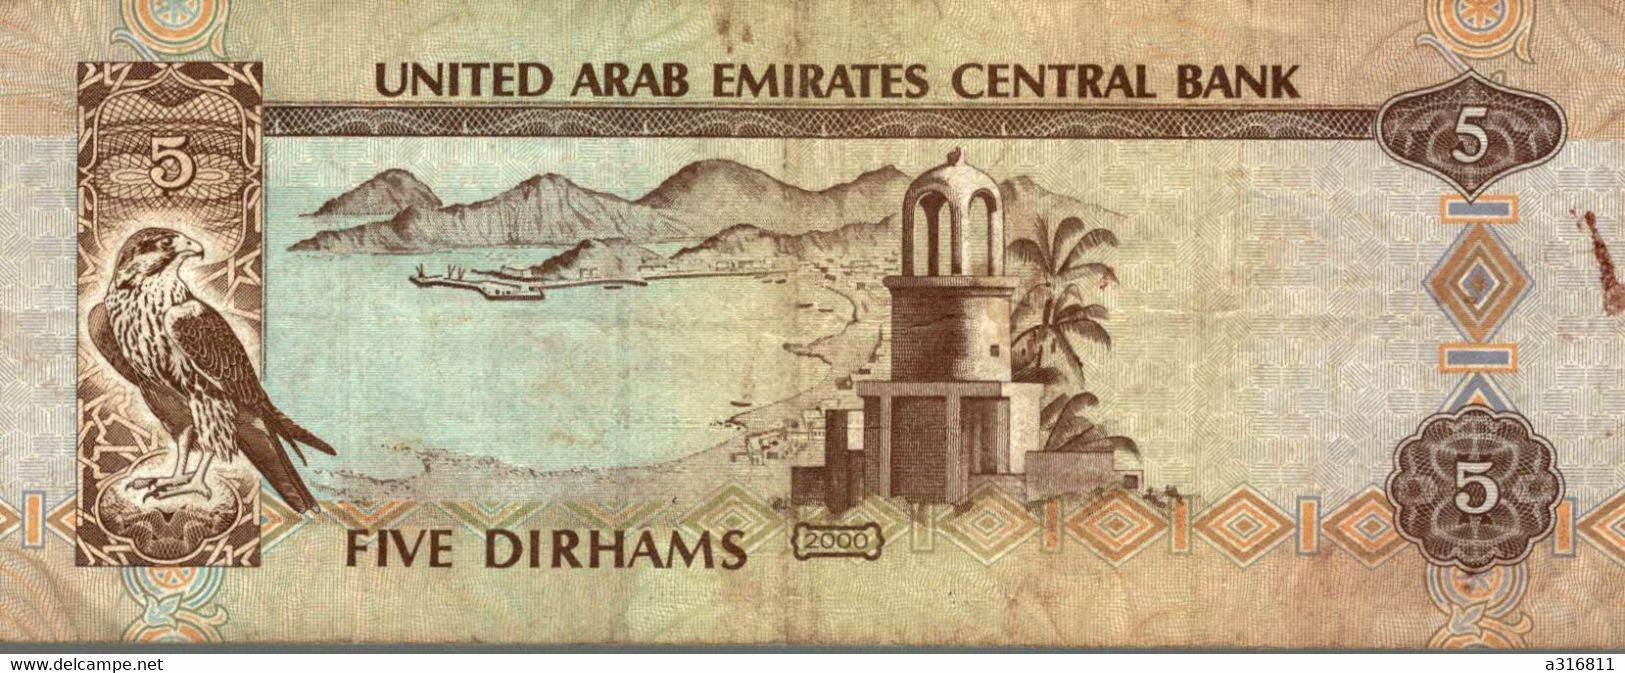 Five Dirhams 2000 - United Arab Emirates